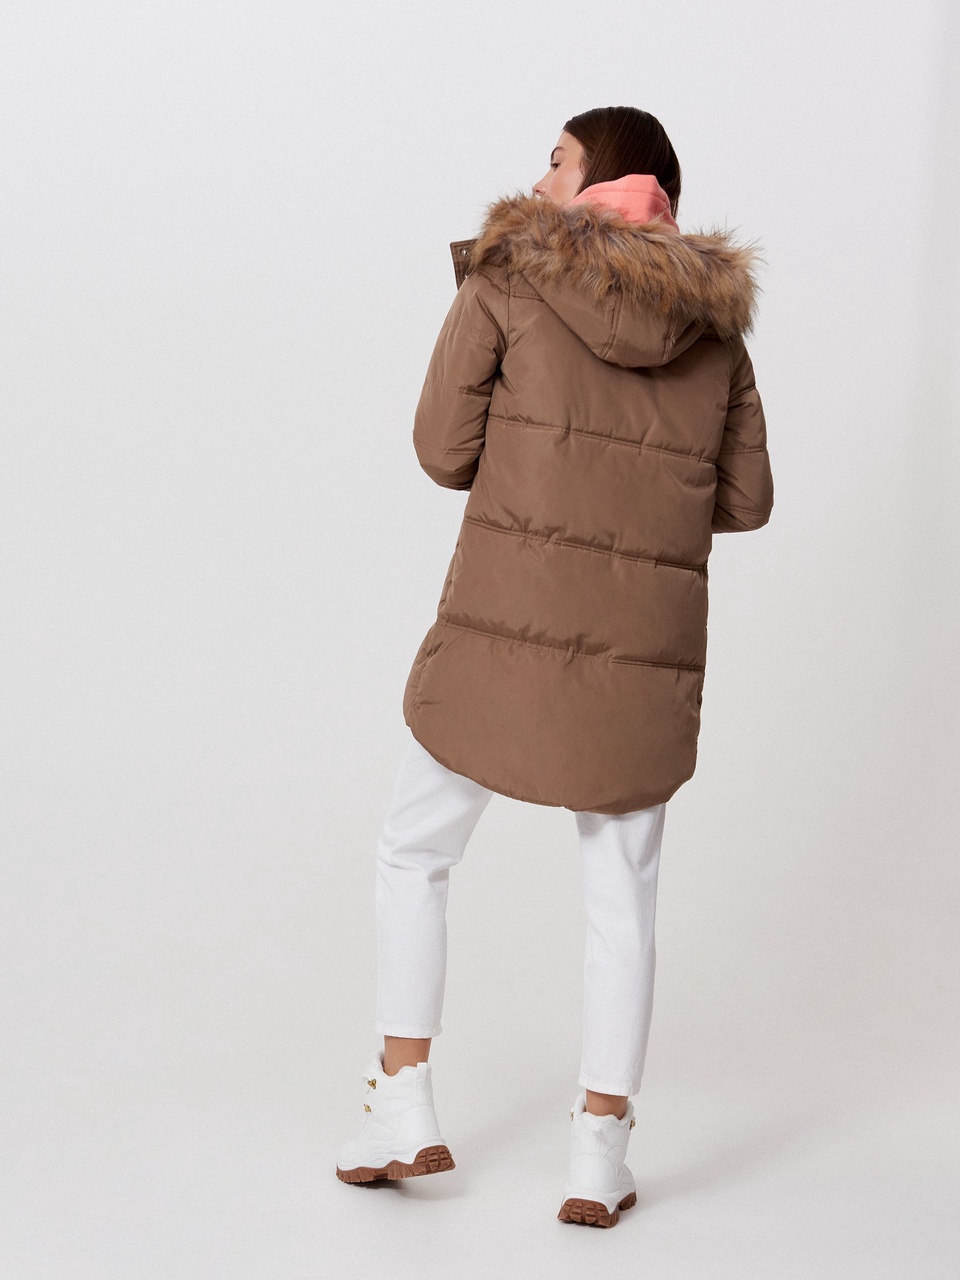 Стеганое пальто с капюшоном - 3 999 ₽, заказать онлайн.